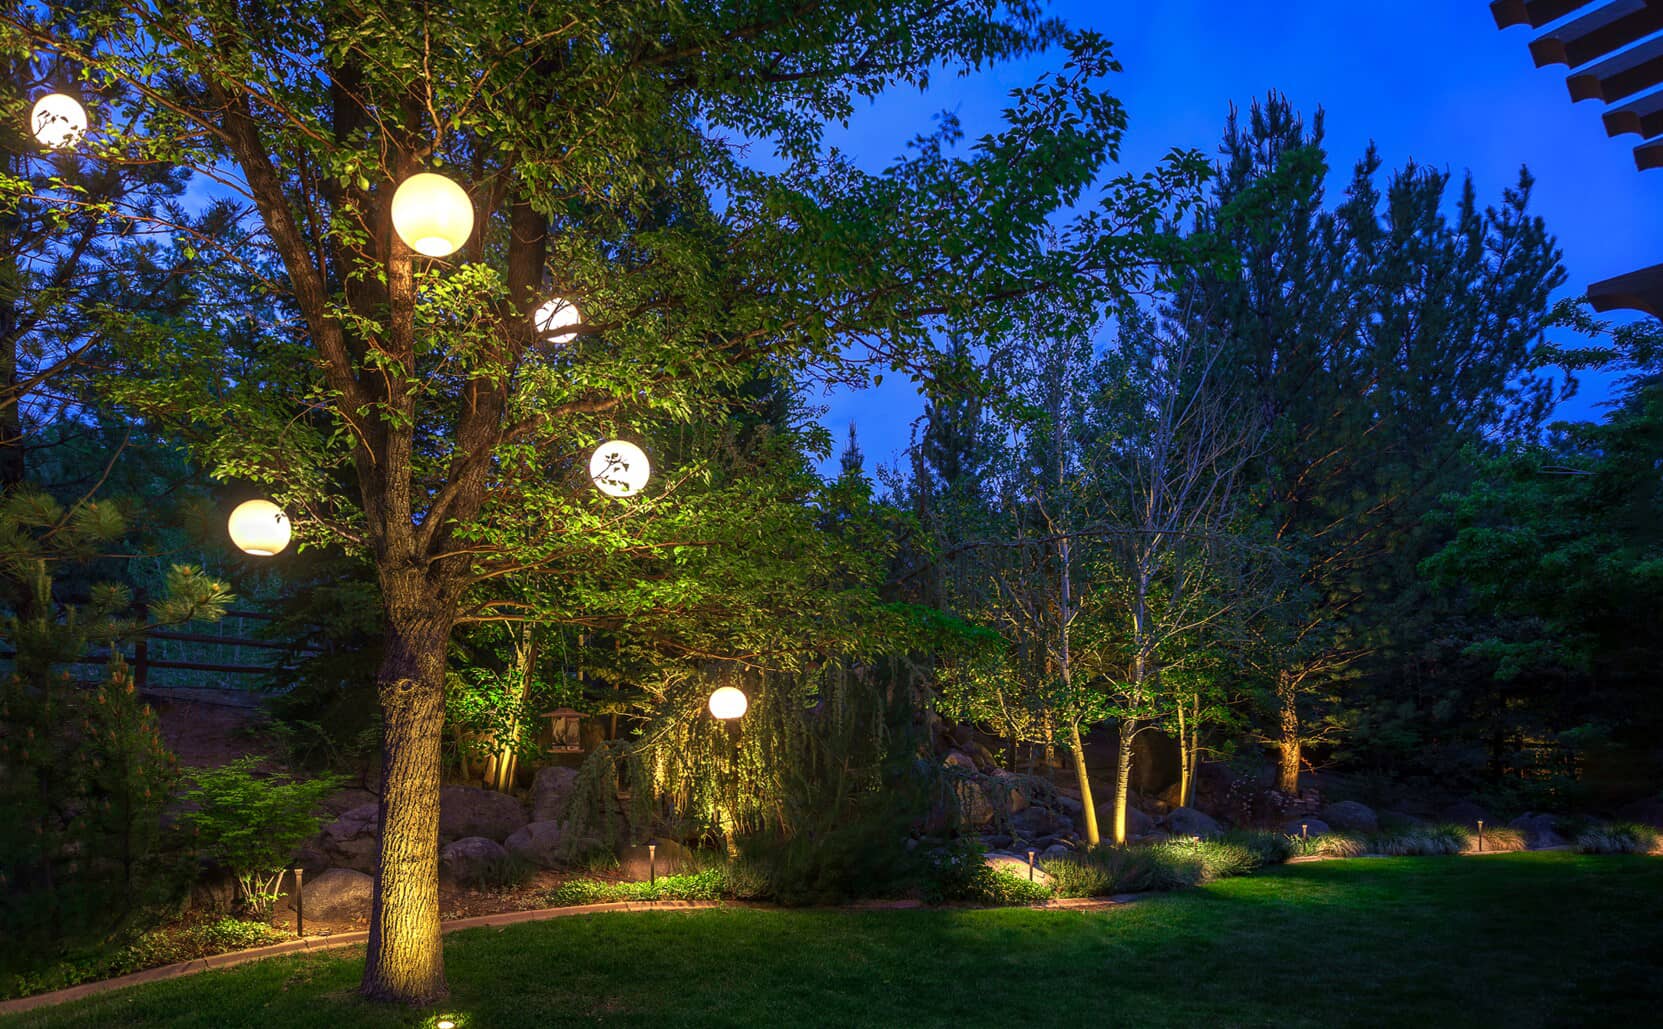 Avon lake tree lighting